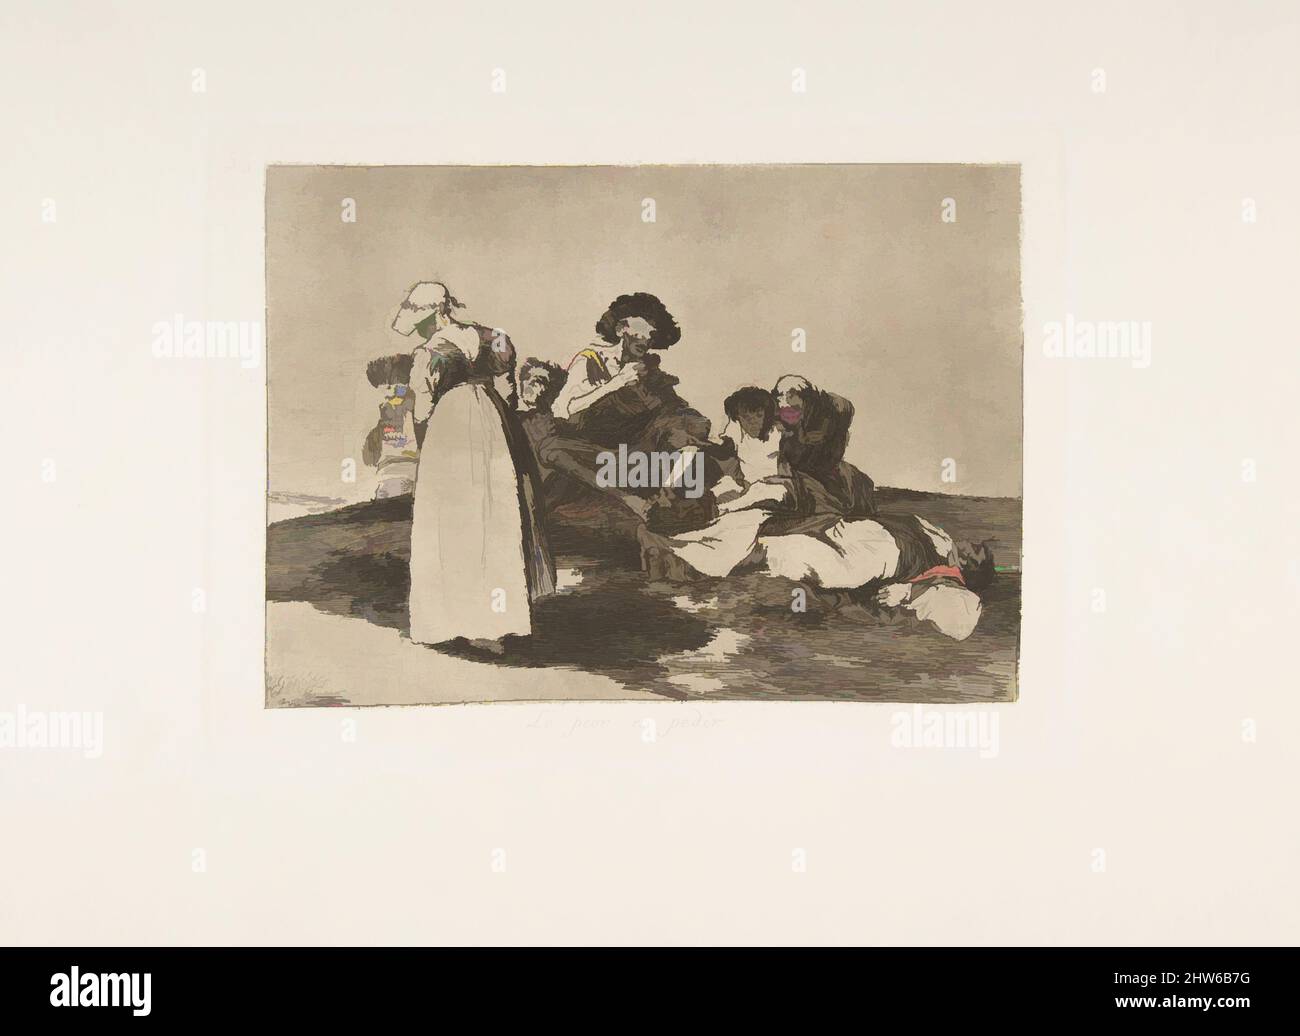 Art inspiré par la planche 55 de 'les désastres de la guerre' (Los Desastres de la Guerra): 'Le pire est de mendier' (Lo peor es pedir), 1811–12 (publié en 1863), Etching, lavis et burnisher, plaque: 6 1/8 × 13/16 po. (15,6 × 2 cm), Prints, Goya (Francisco de Goya y Lucientes) (espagnol, oeuvres classiques modernisées par Artotop avec une touche de modernité. Formes, couleur et valeur, impact visuel accrocheur sur l'art émotions par la liberté d'œuvres d'art d'une manière contemporaine. Un message intemporel qui cherche une nouvelle direction créative. Artistes qui se tournent vers le support numérique et créent le NFT Artotop Banque D'Images